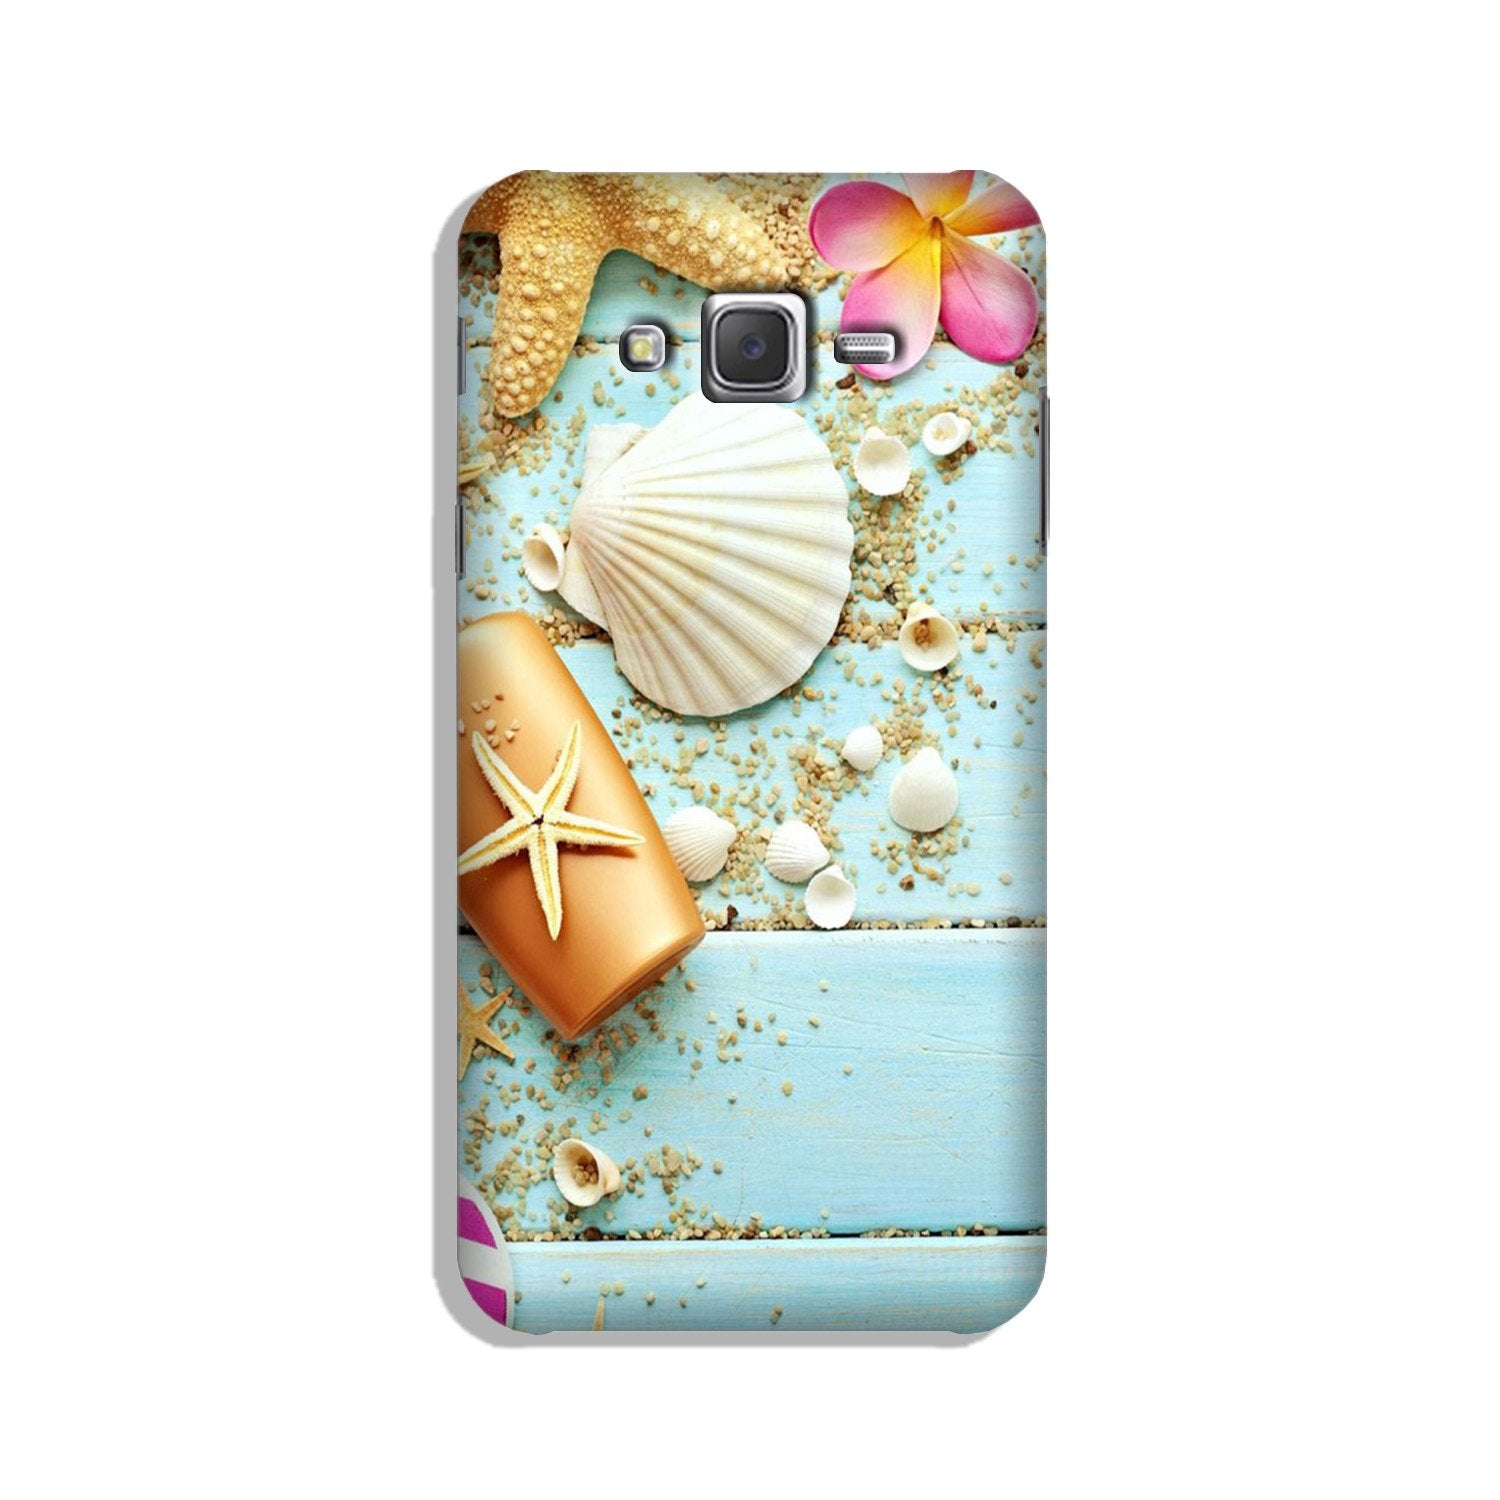 Sea Shells Case for Galaxy J7 (2015)